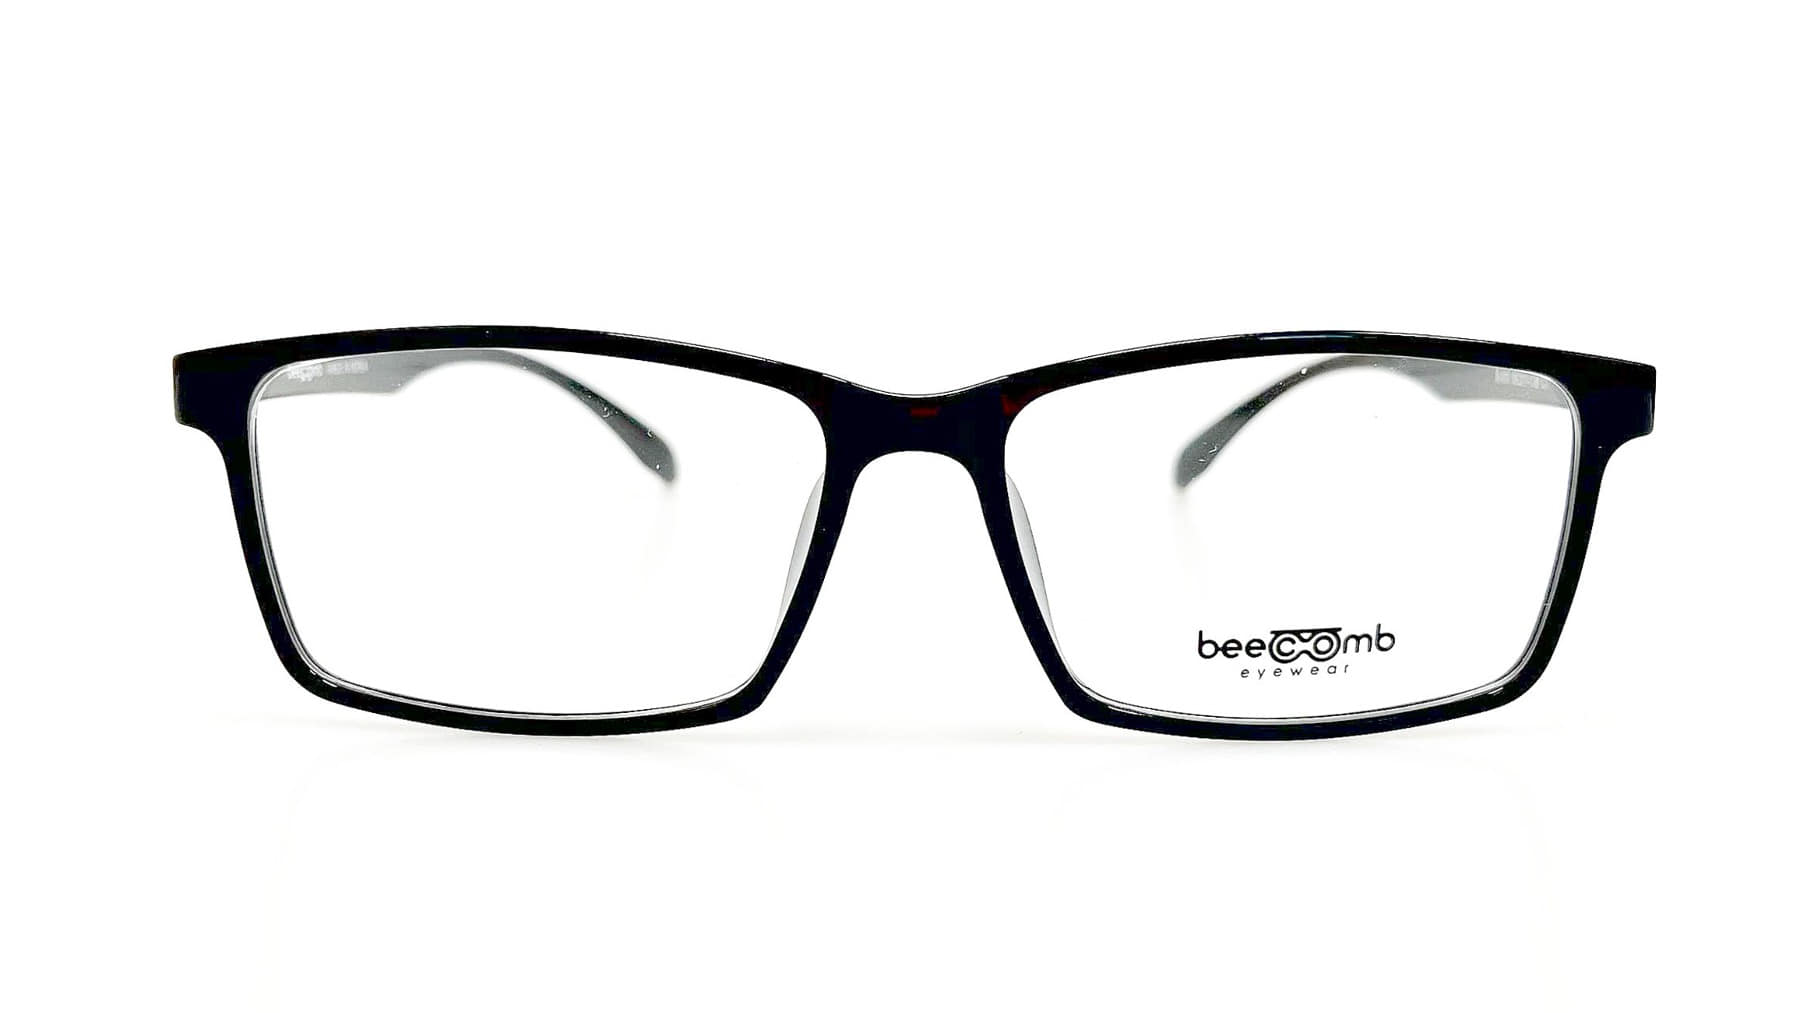 B-373, Korean glasses, sunglasses, eyeglasses, glasses